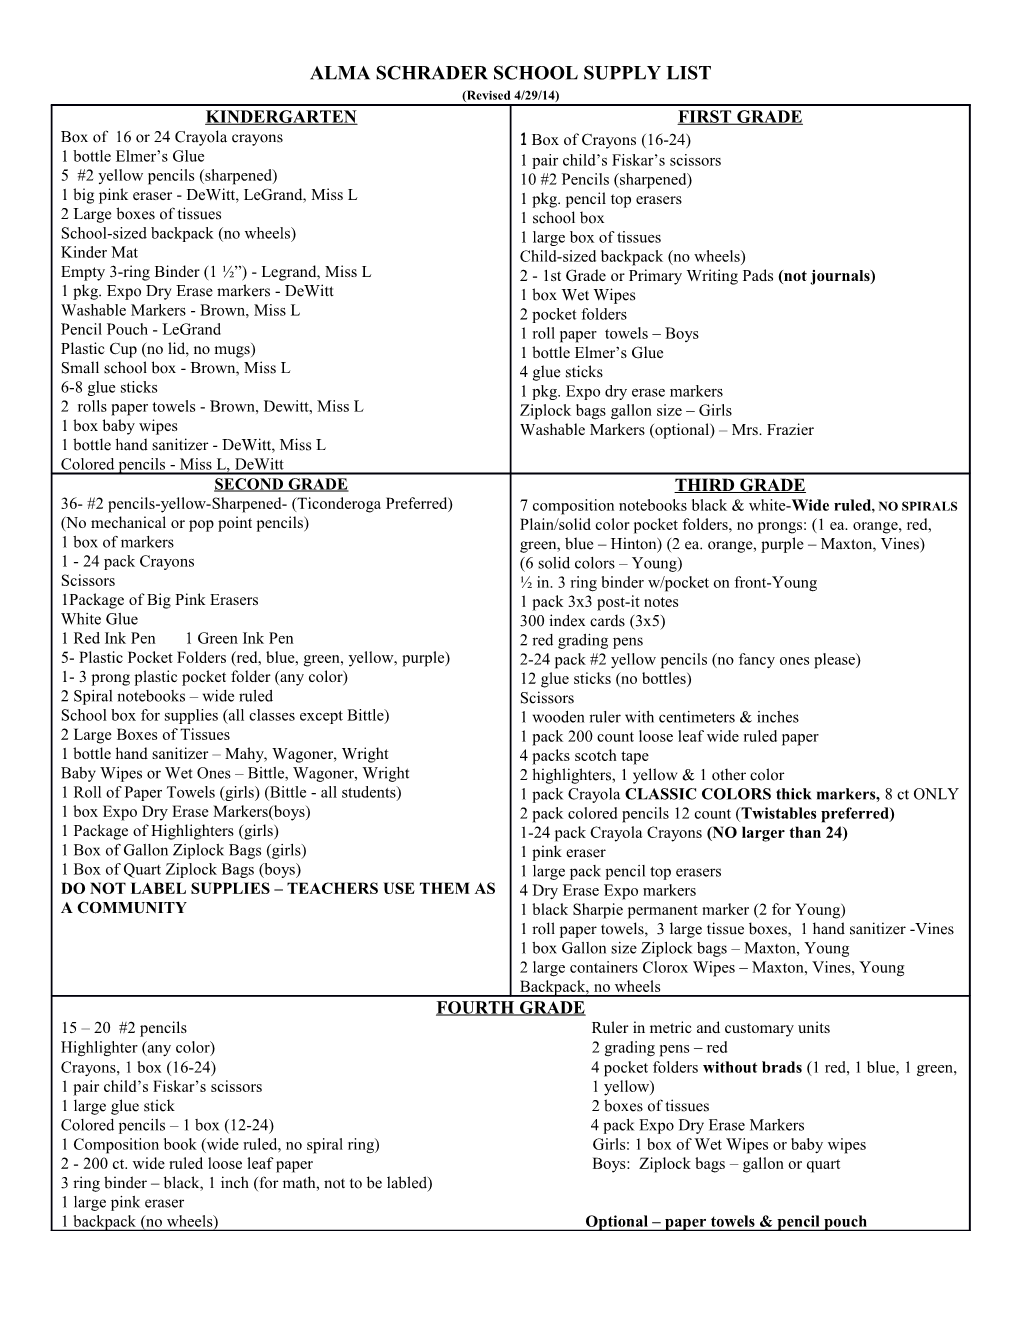 Alma Schrader School Supply List